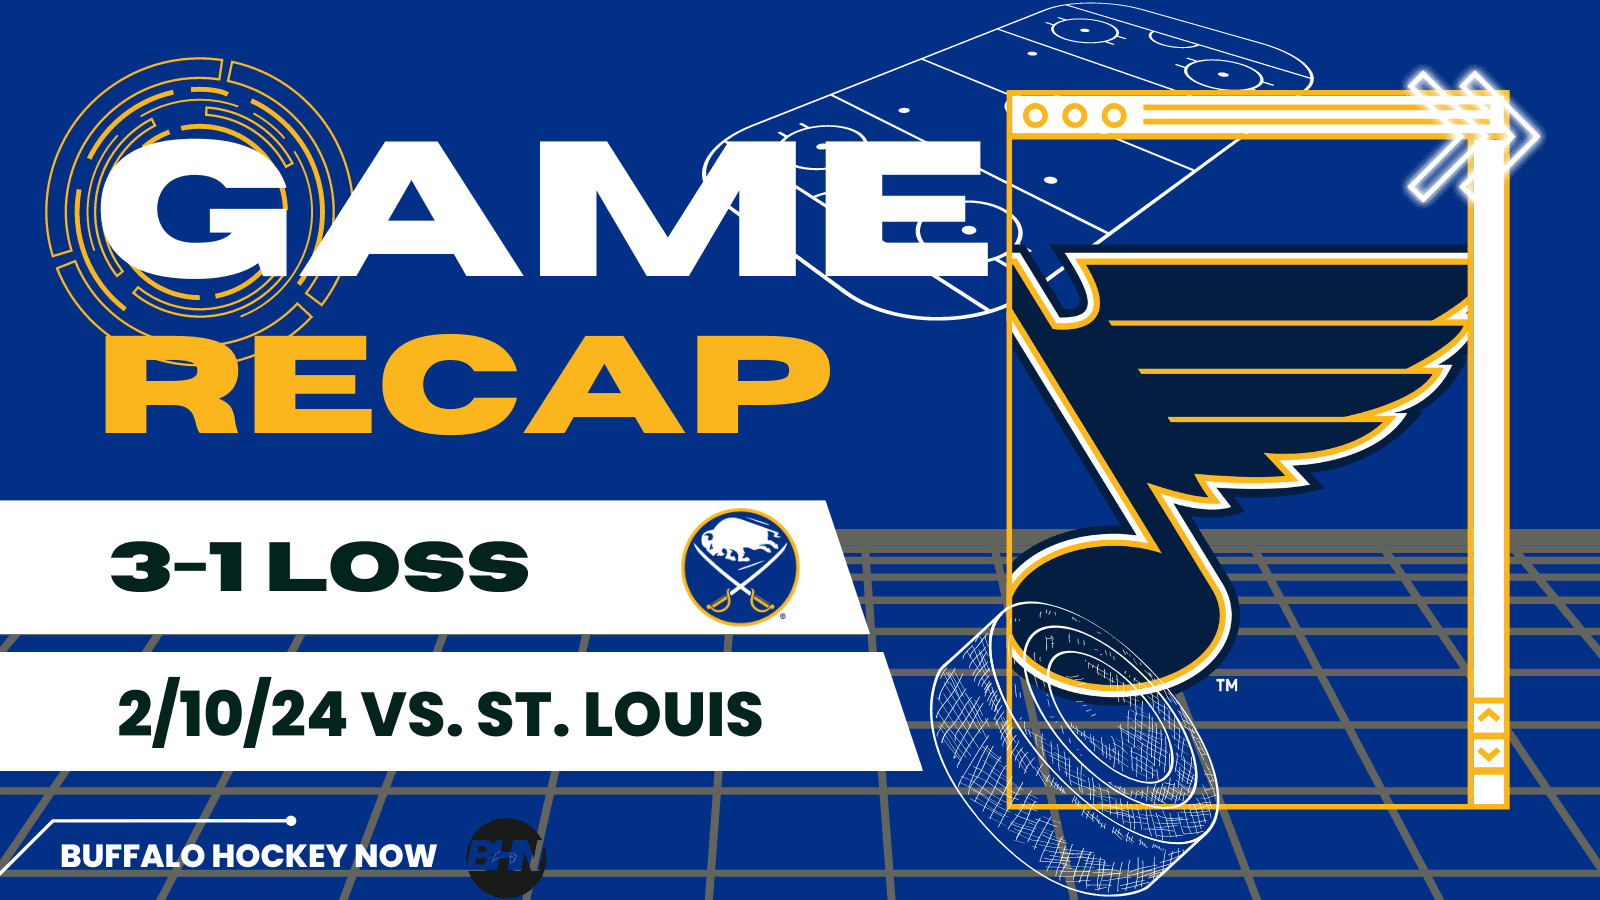 St. Louis Blues Buffalo Sabres game recap